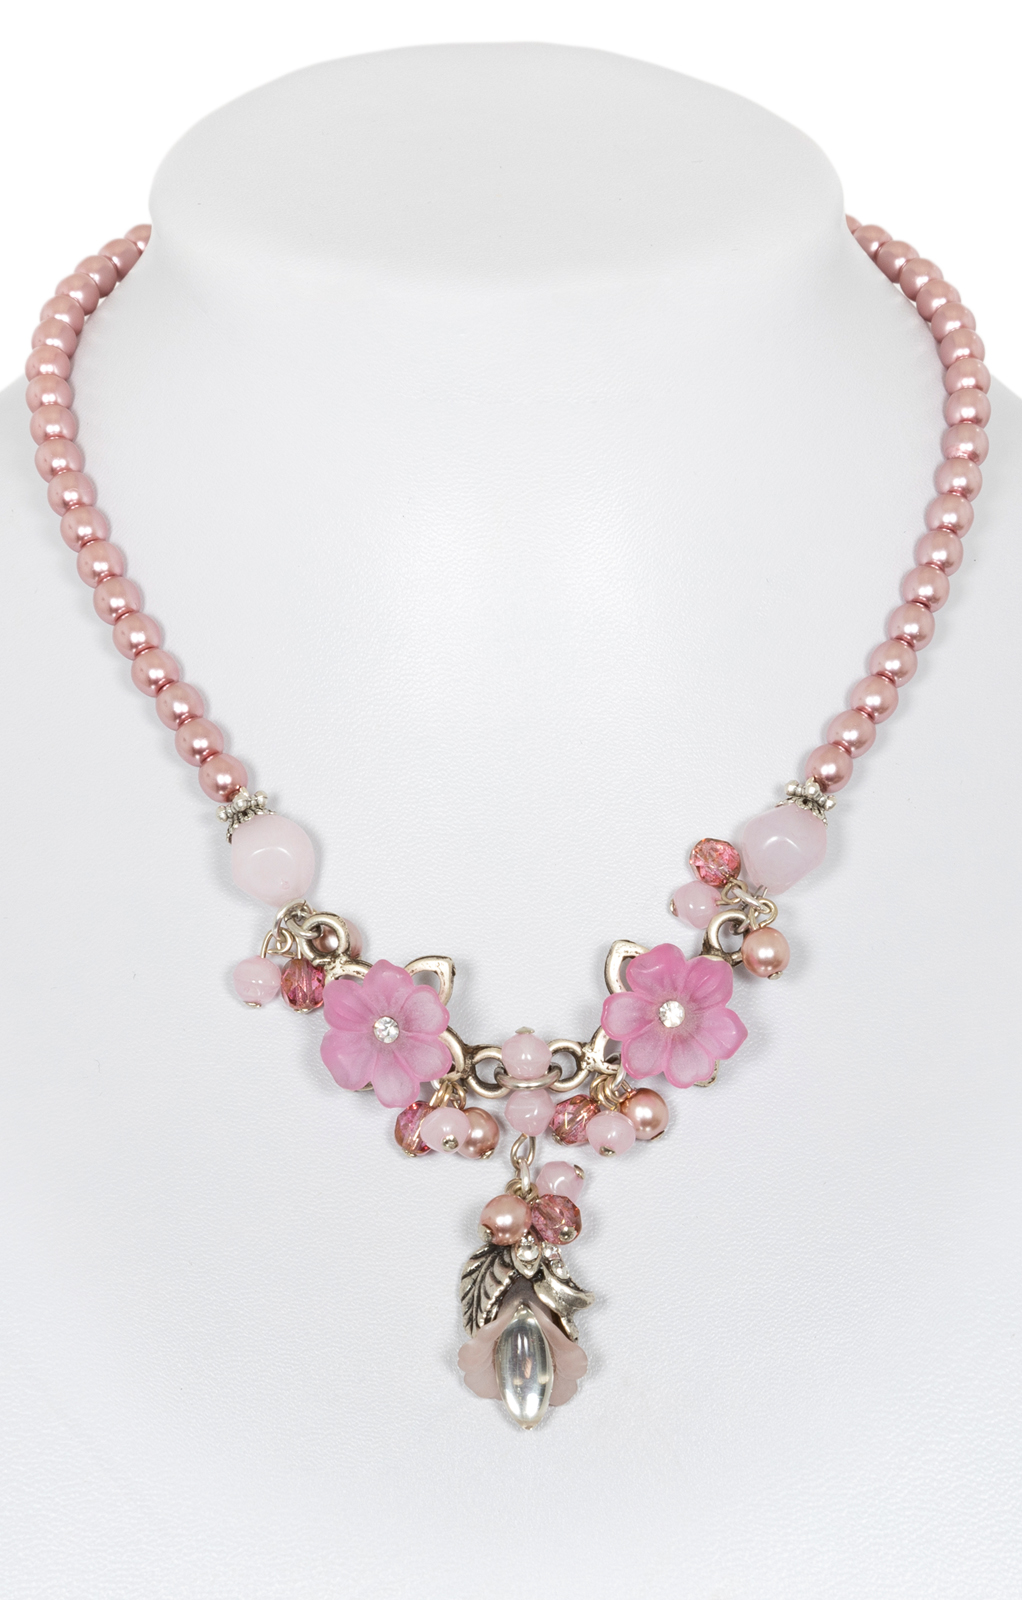 Tradtional Pearl necklace 4019 von Alpenwahn